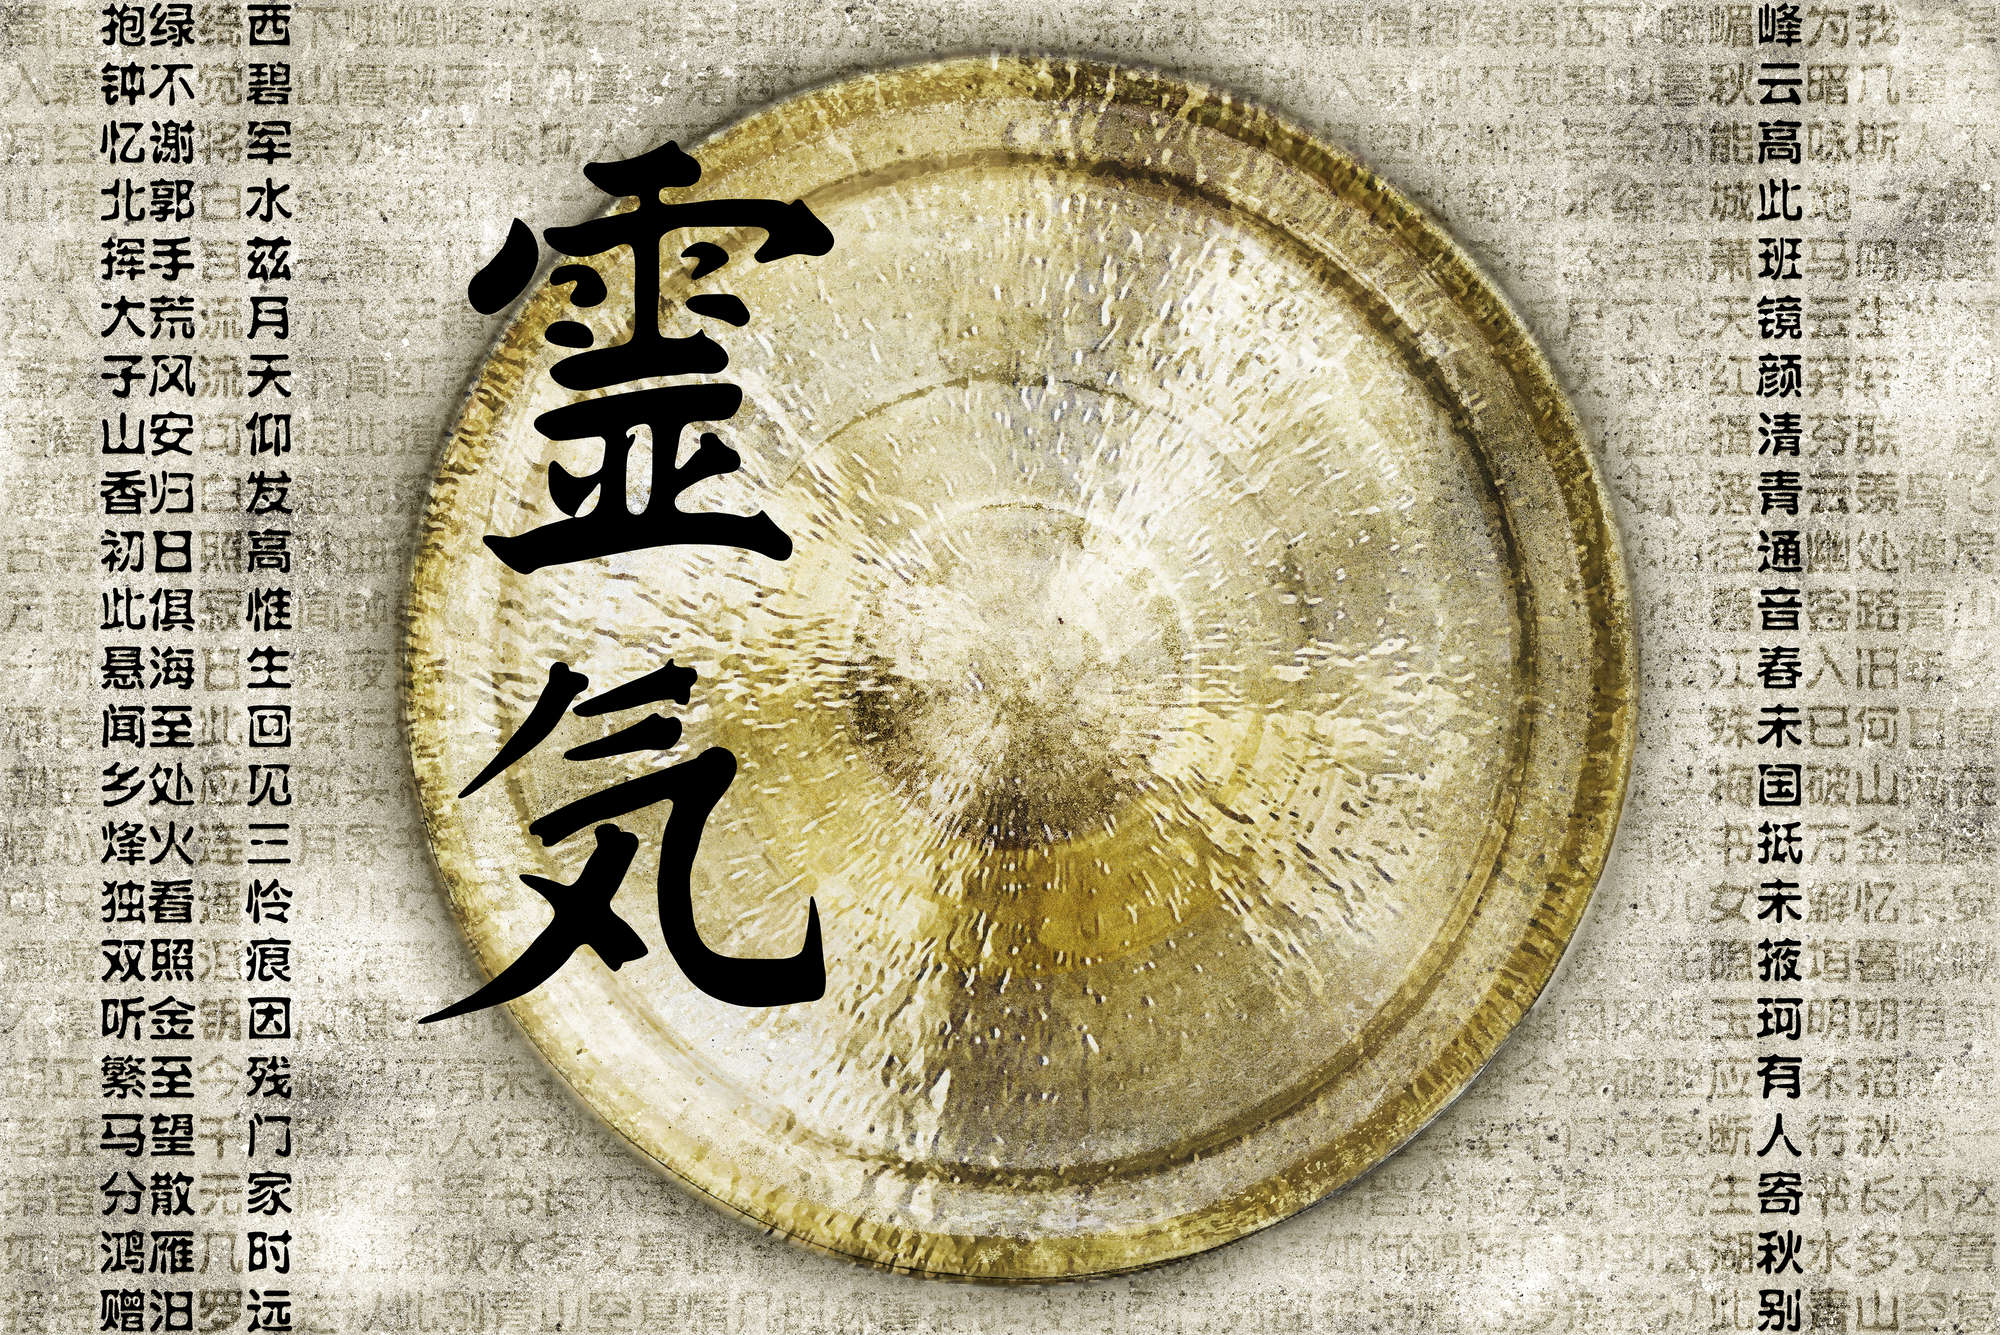             Papel pintado Gong asiático - tejido no tejido liso de alta calidad
        